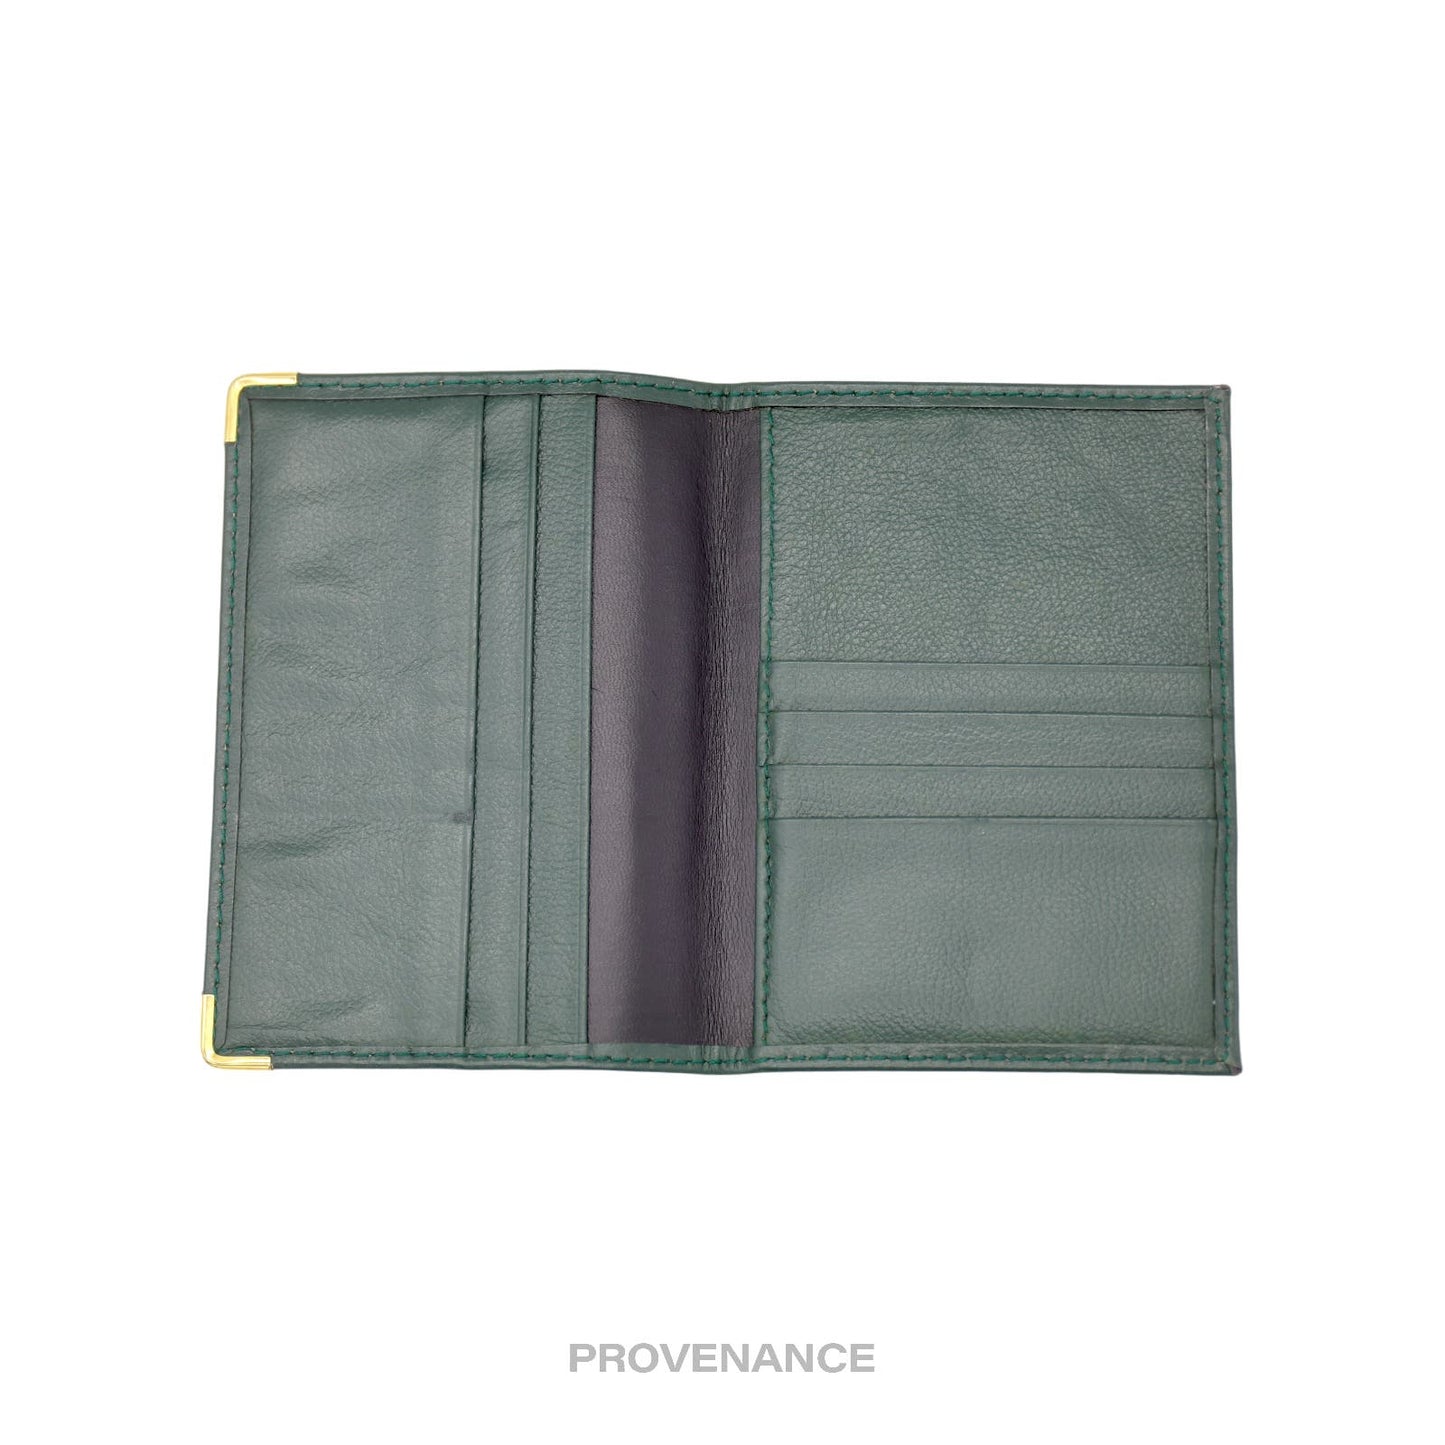 🔴 Rolex Crown Passport Wallet - Forest Green Leather